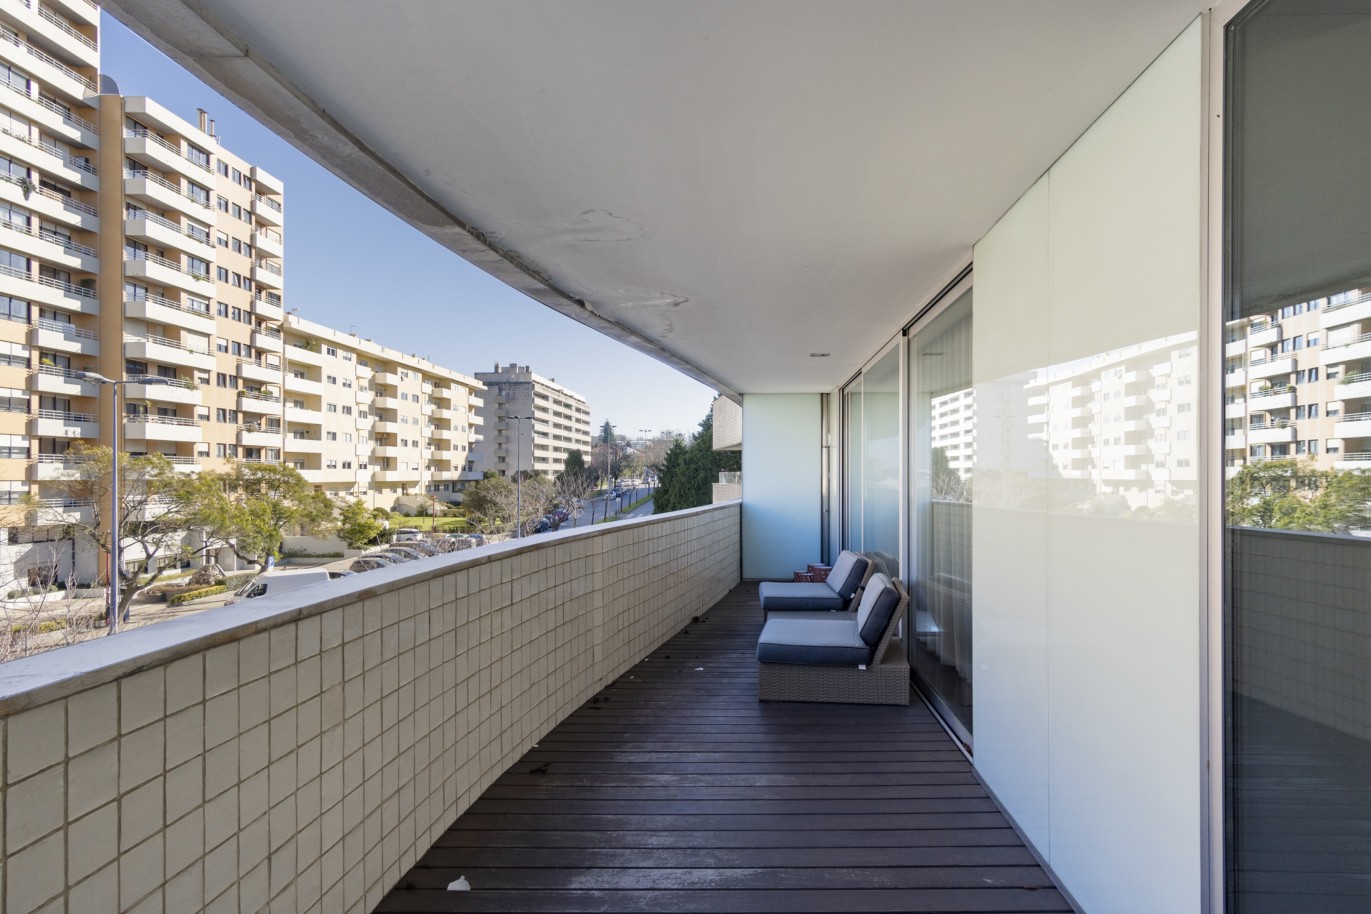 3 Bedroom Duplex Apartment with balcony, for sale, in Boavista, Porto, Portugal_217722